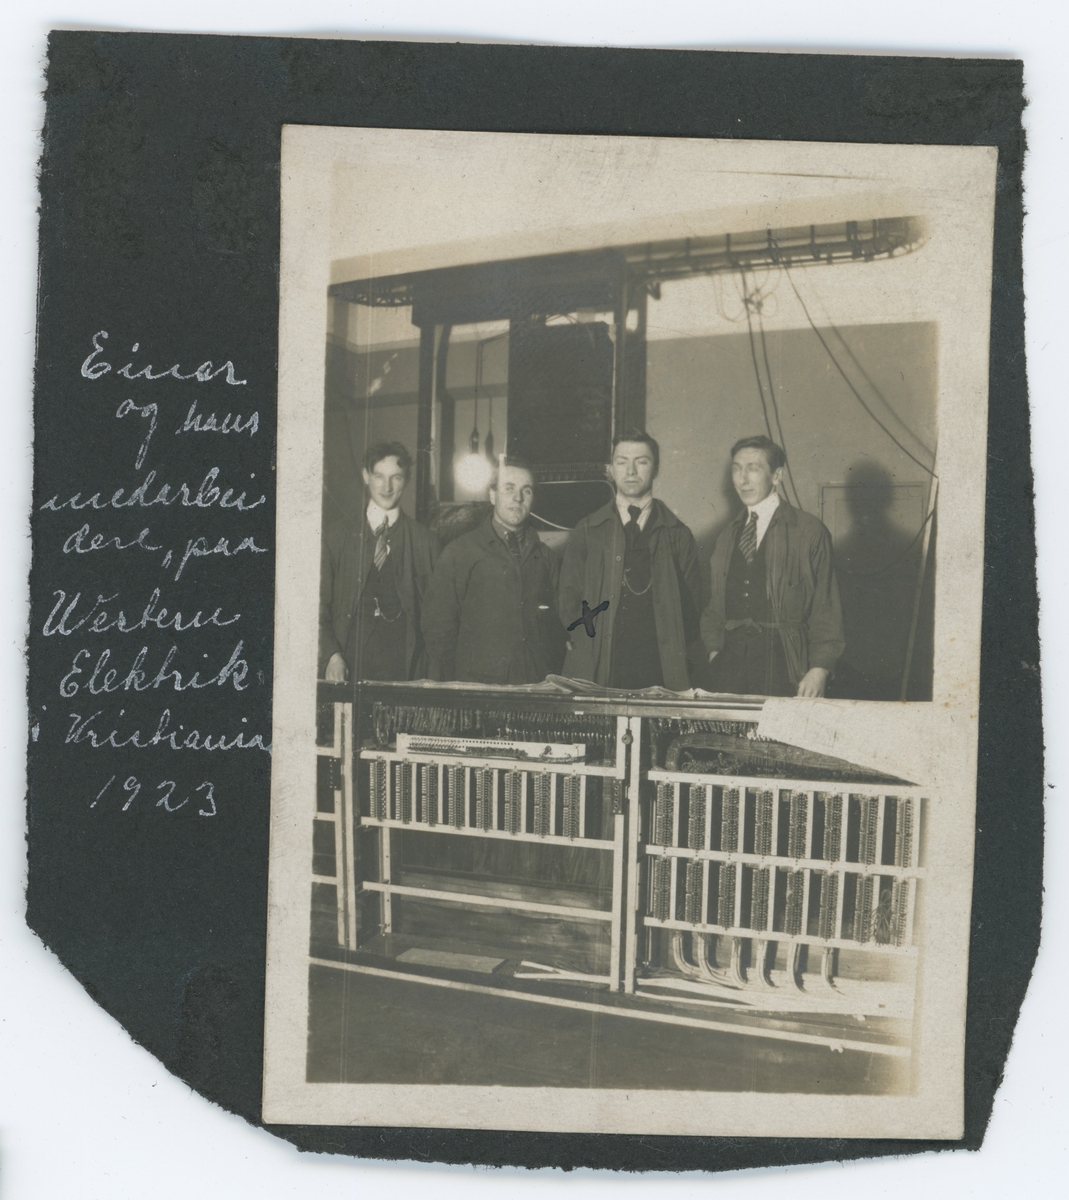 Fire arbeidere foran en elektrisk maskin på selskapet "Western Elektrik" i Kristiania.